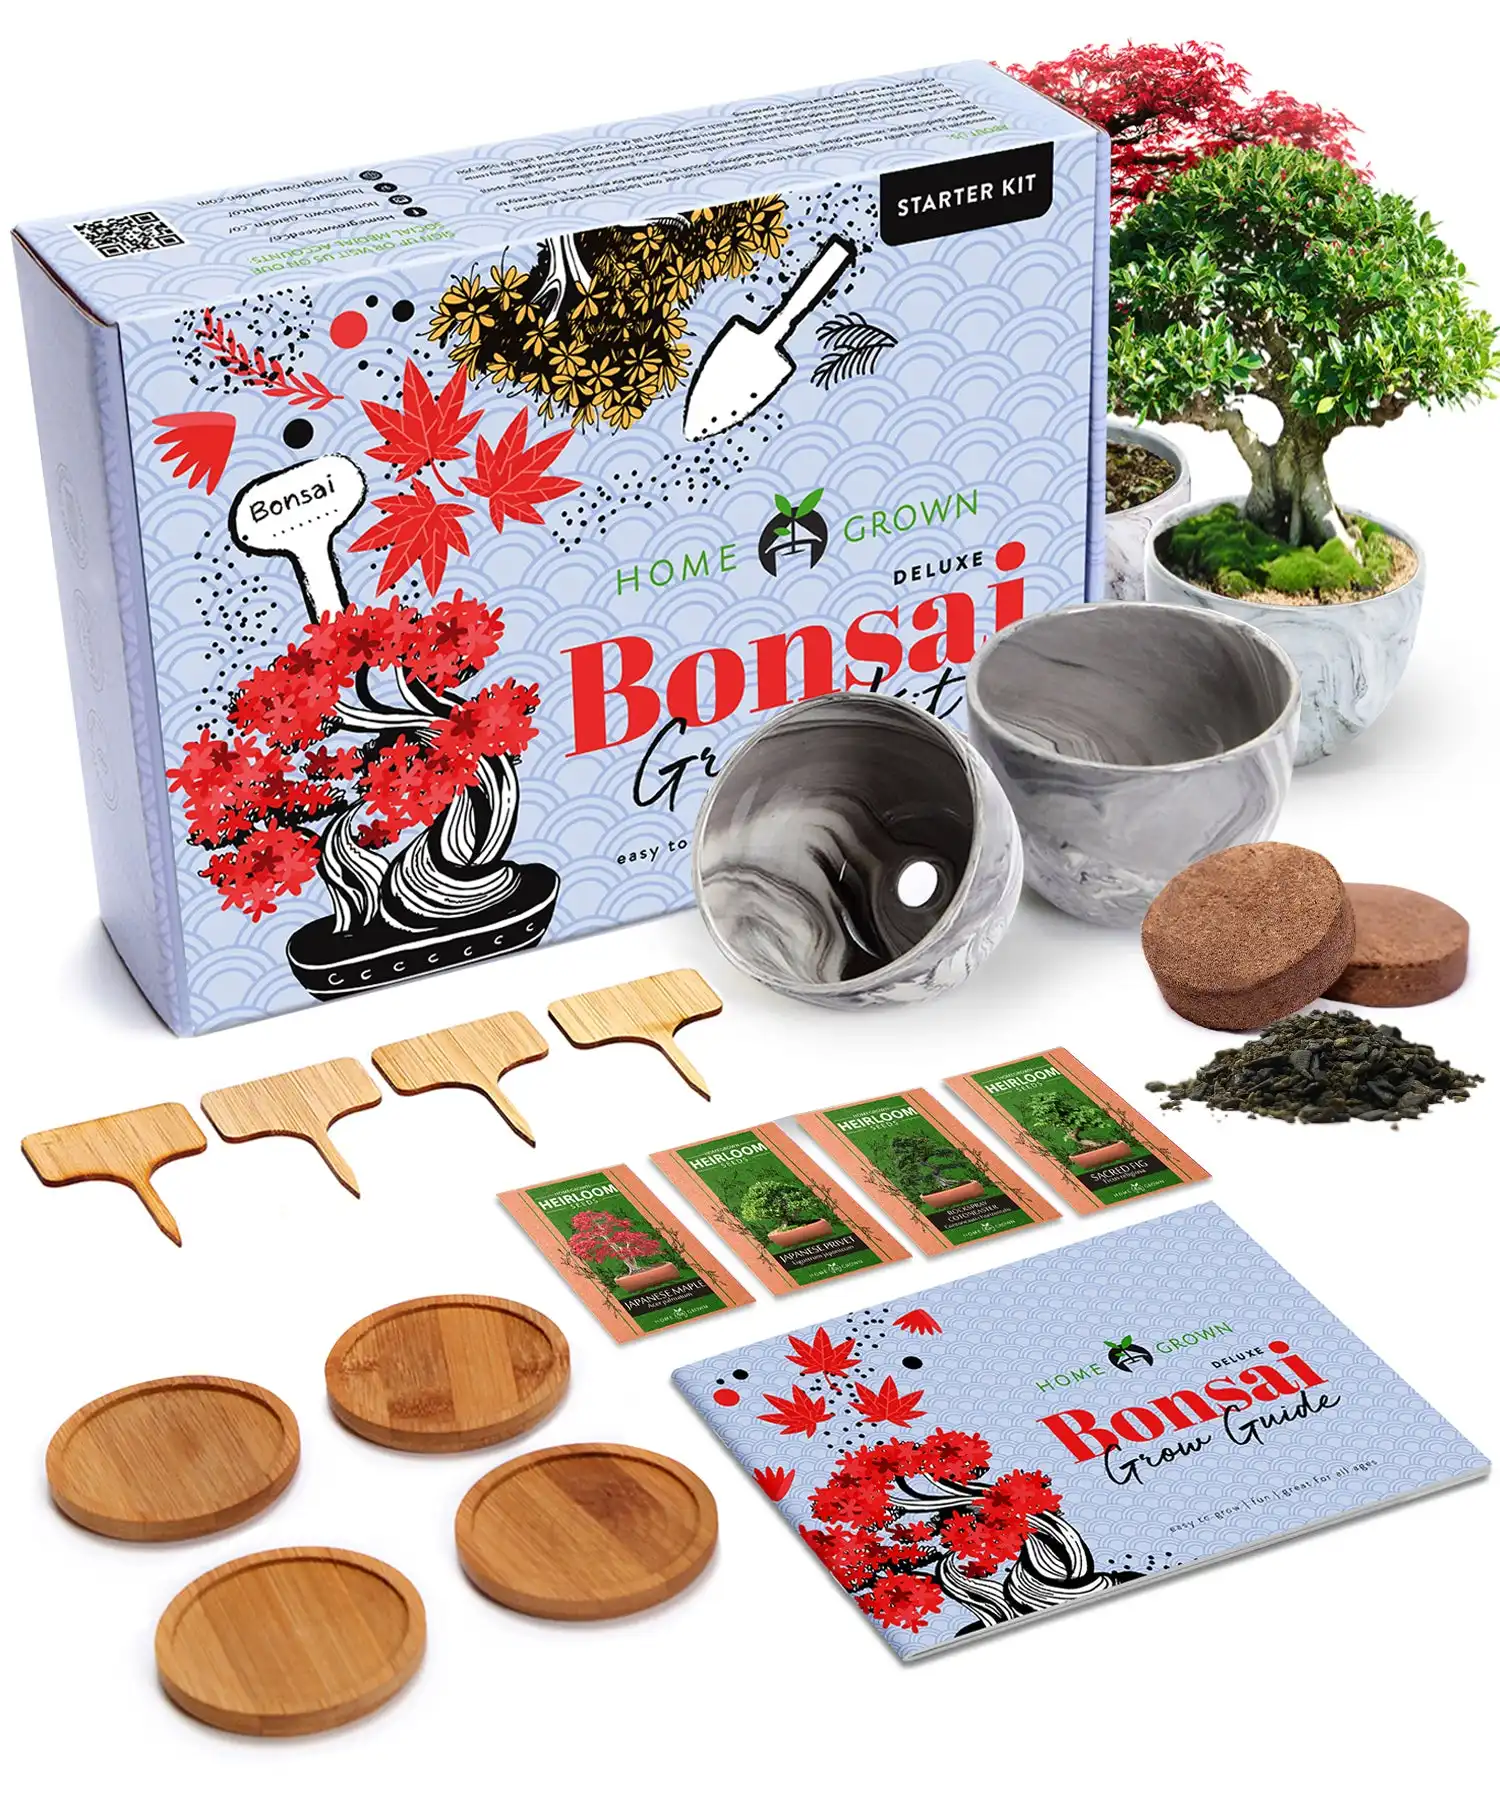 Kit de culture d'arbre bonsaï de luxe Kit d'arbre bonsaï Grow Your Own Premium 4 Bonsai Tree Gardening Gift For Women or Me